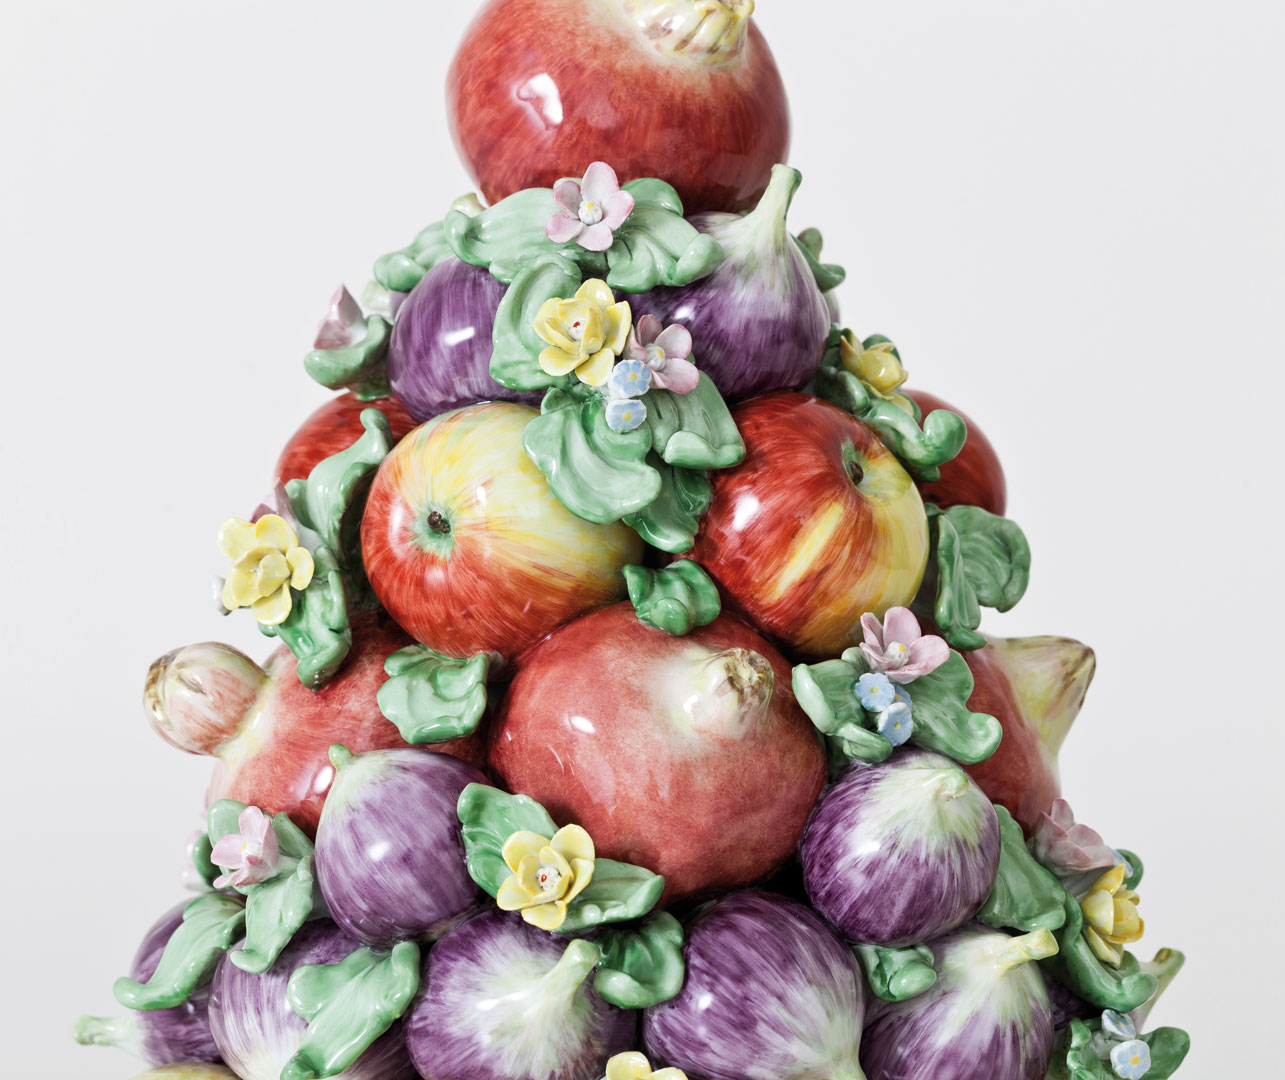 Запретный плод. Скульптор Крис Антеманн в Мейсене – афиша